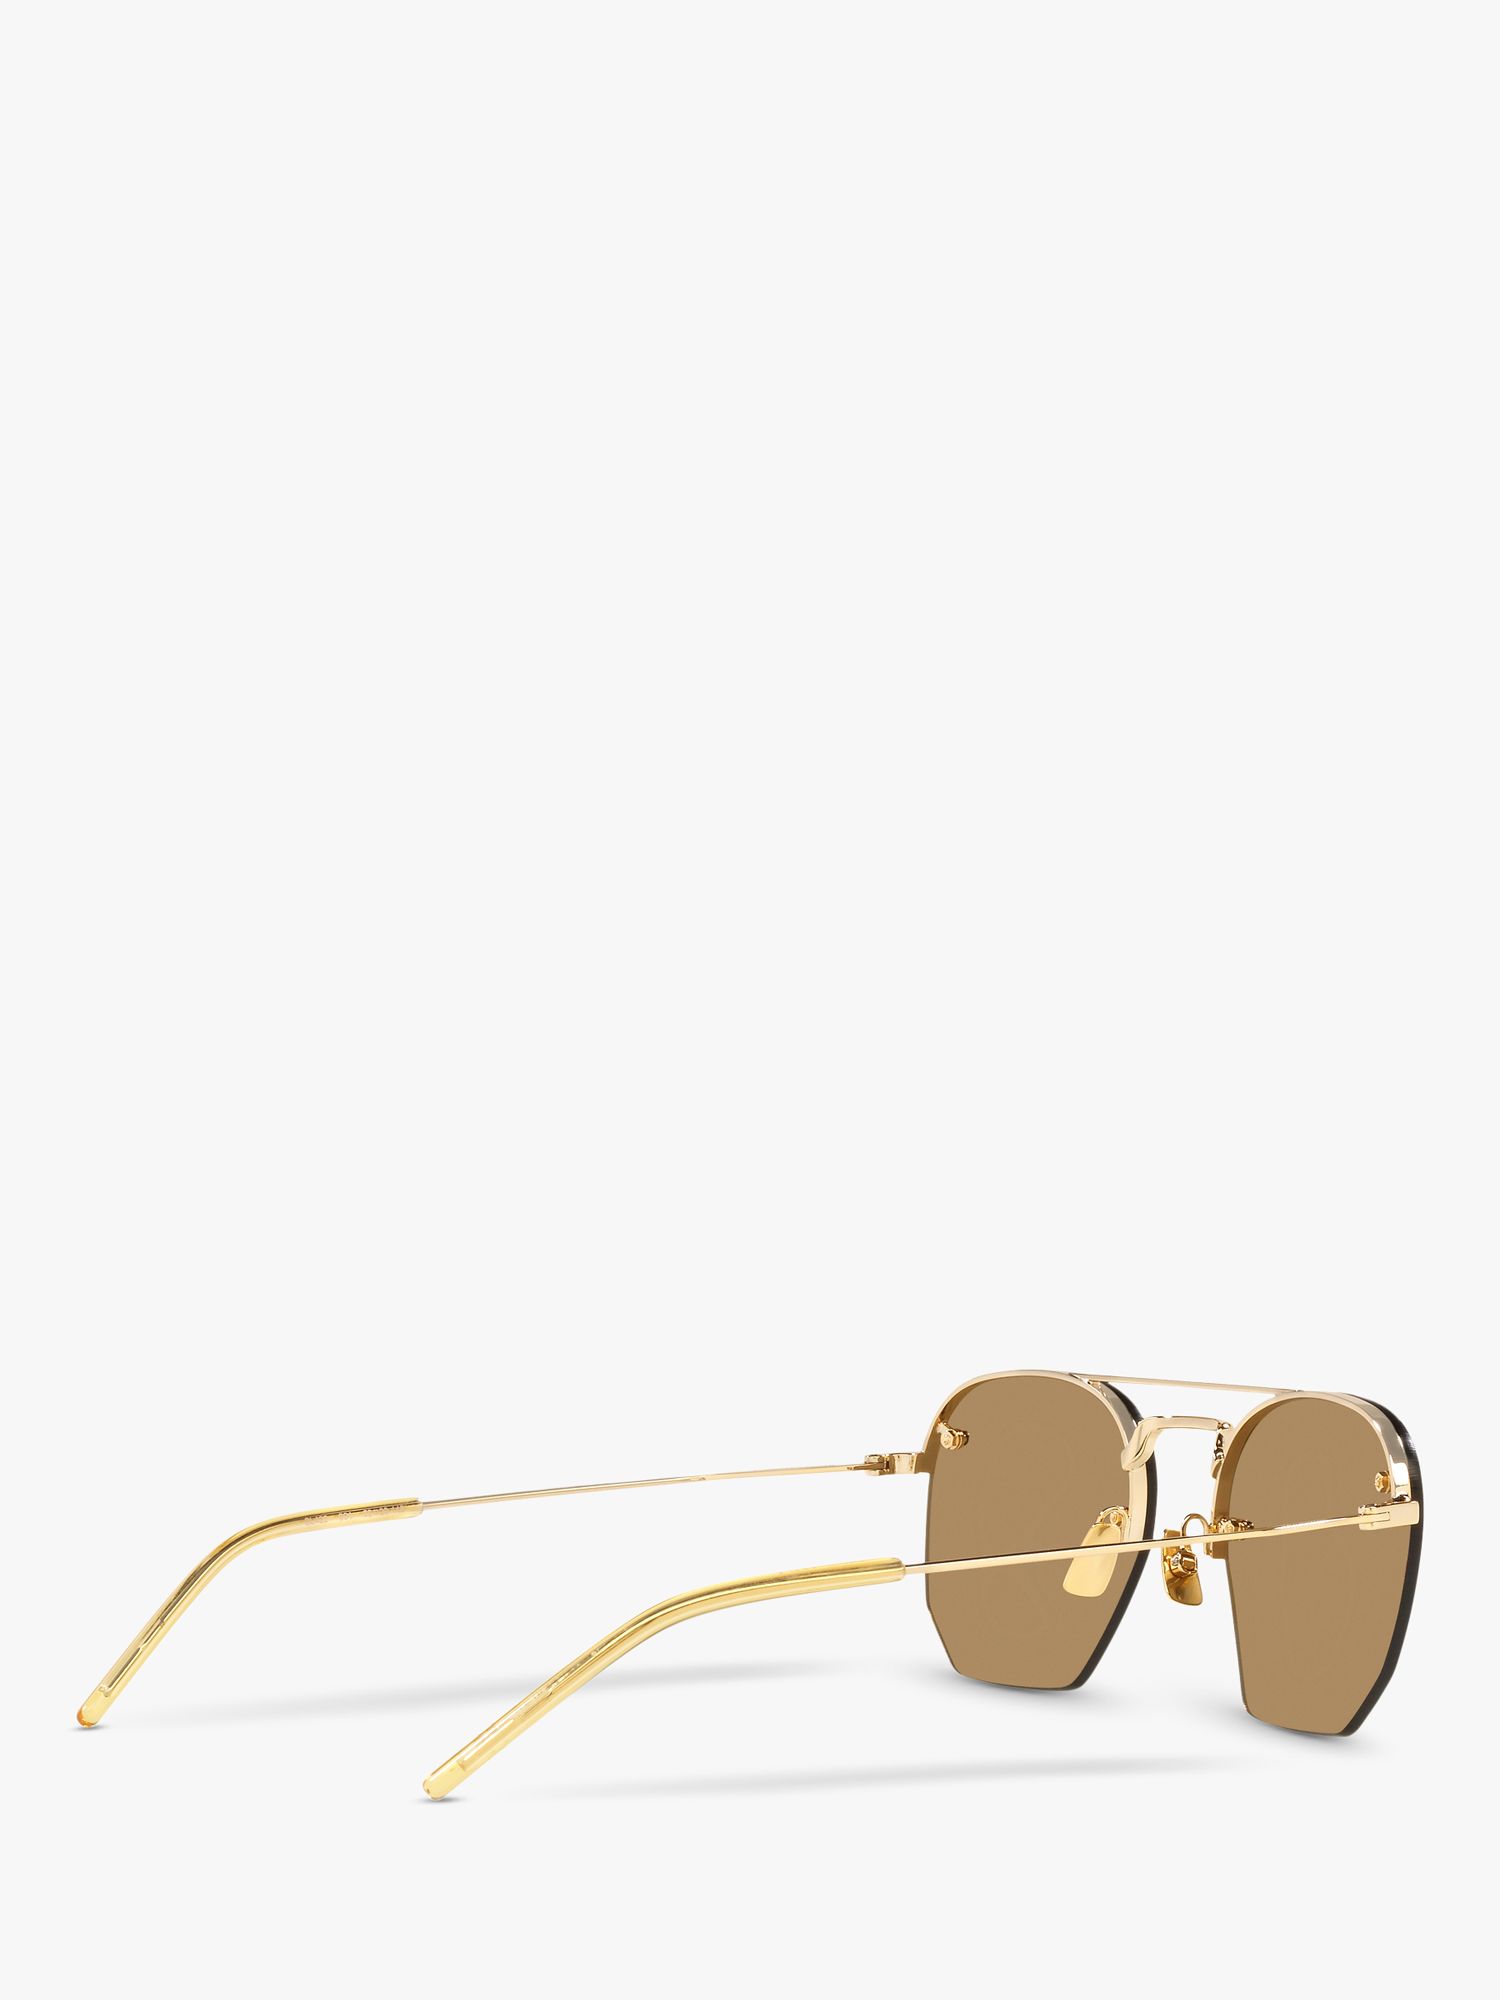 Saint Laurent Gold & Brown SL 422 Sunglasses